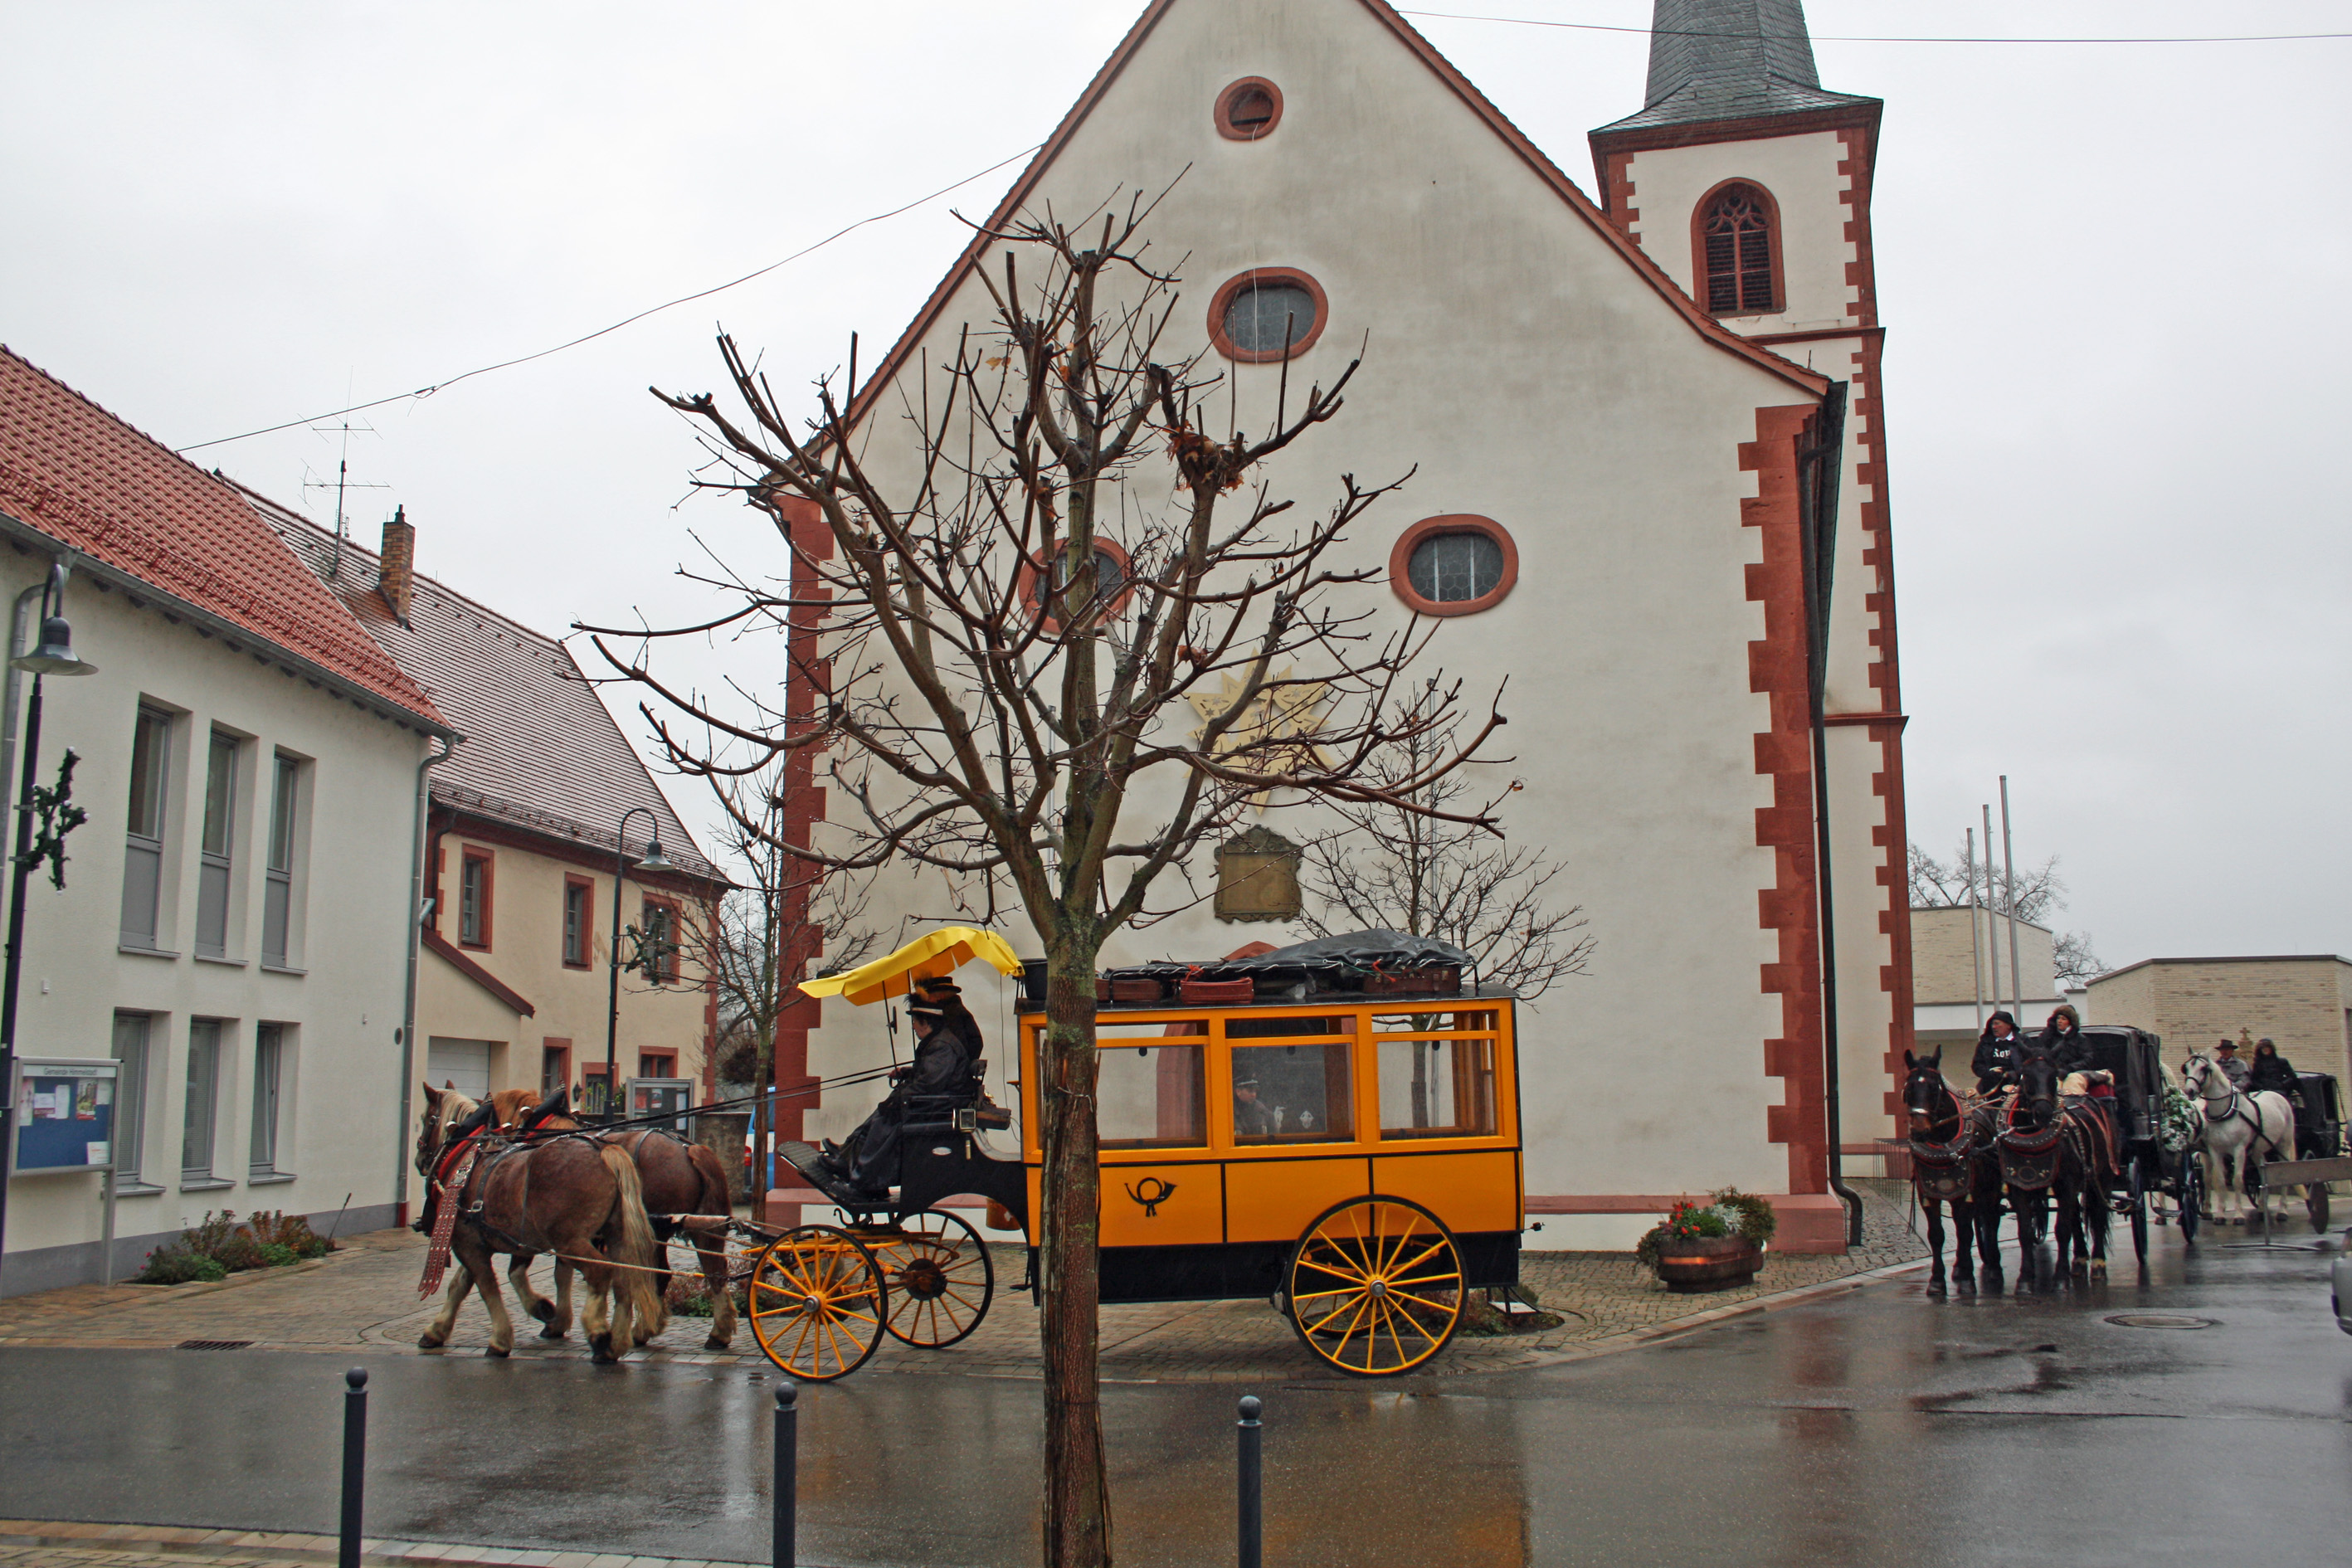 Weihnachtsmarkt Himmelstadt: Die Postkutsche fährt zum Weihnachtspostamt, vorbei an der Kirche.